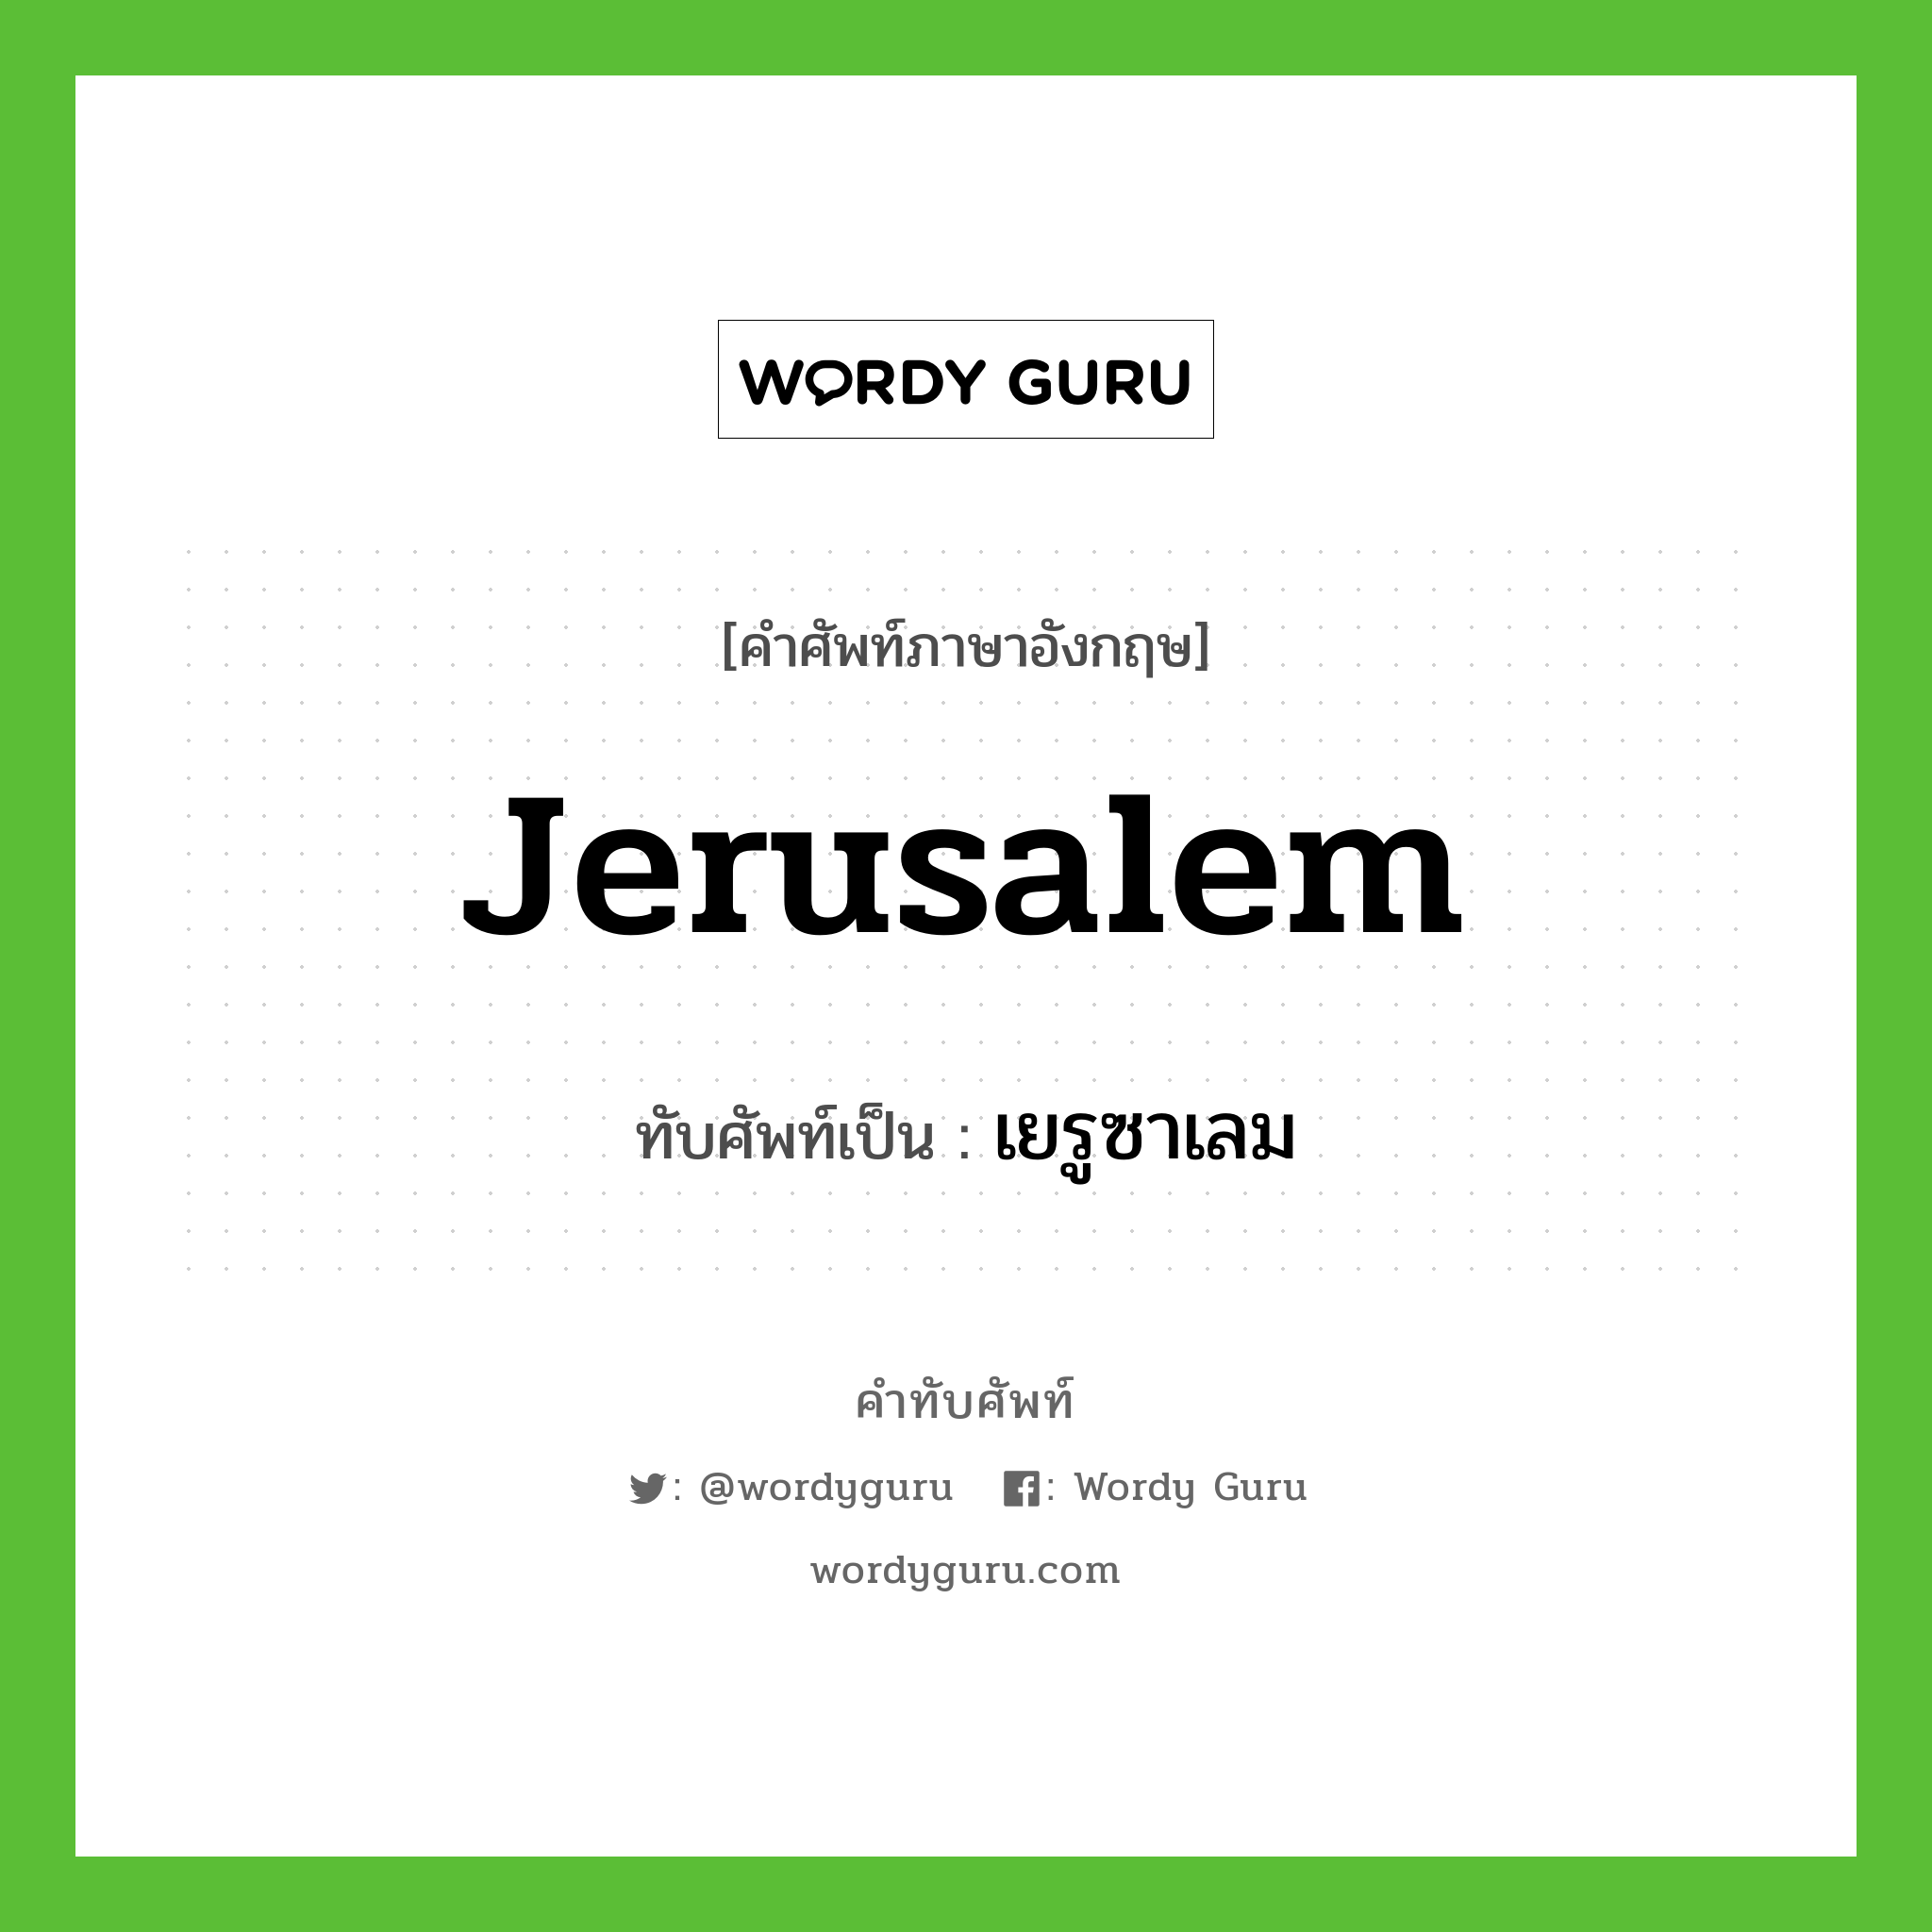 Jerusalem เขียนเป็นคำไทยว่าอะไร?, คำศัพท์ภาษาอังกฤษ Jerusalem ทับศัพท์เป็น เยรูซาเลม